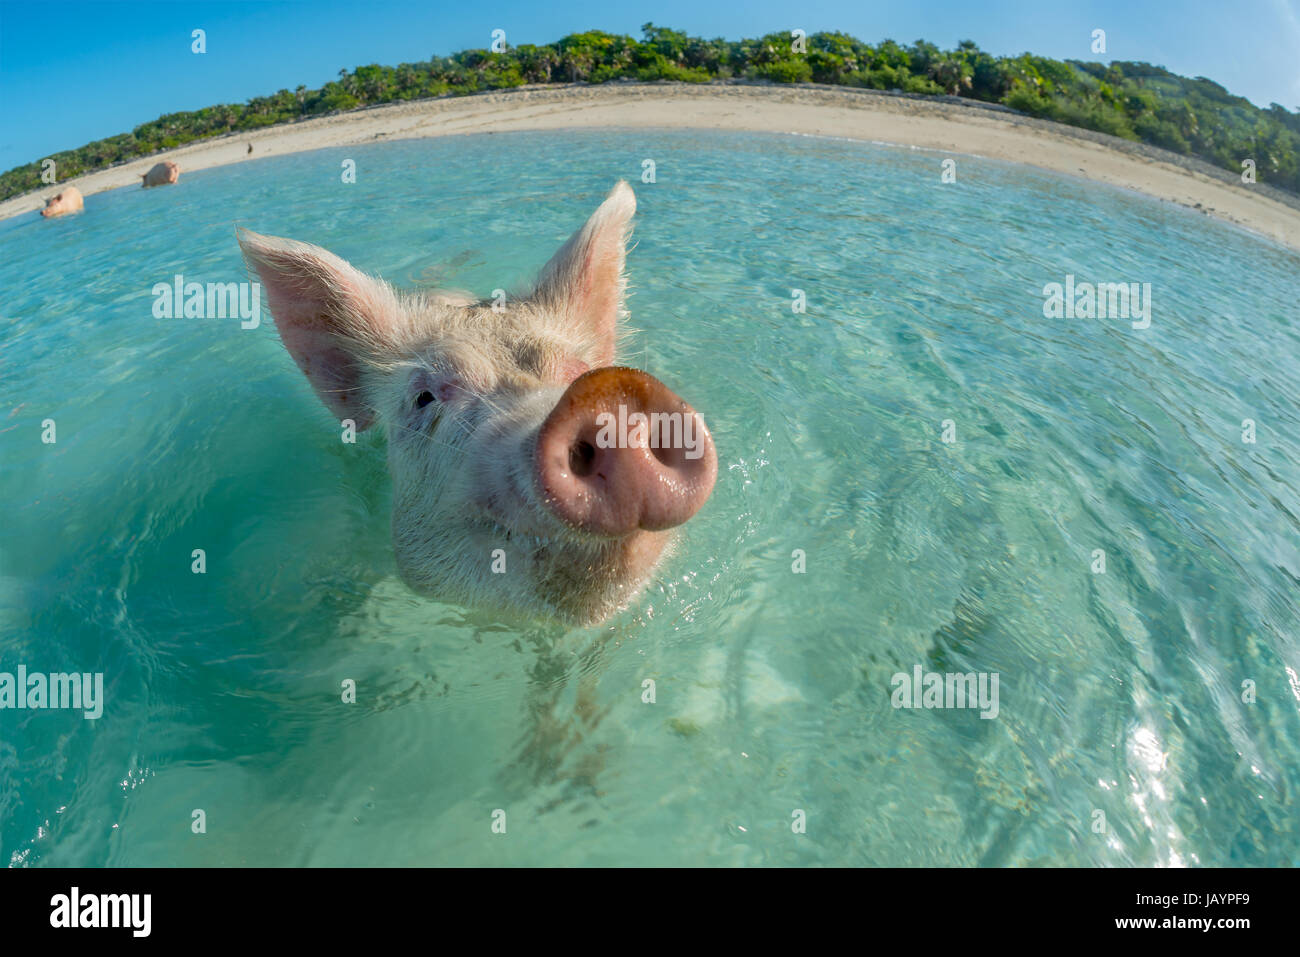 Zufriedenes rosa Schwein im türkisfarbenen Meer zu schwimmen. Bahamas, Dezember Stockfoto